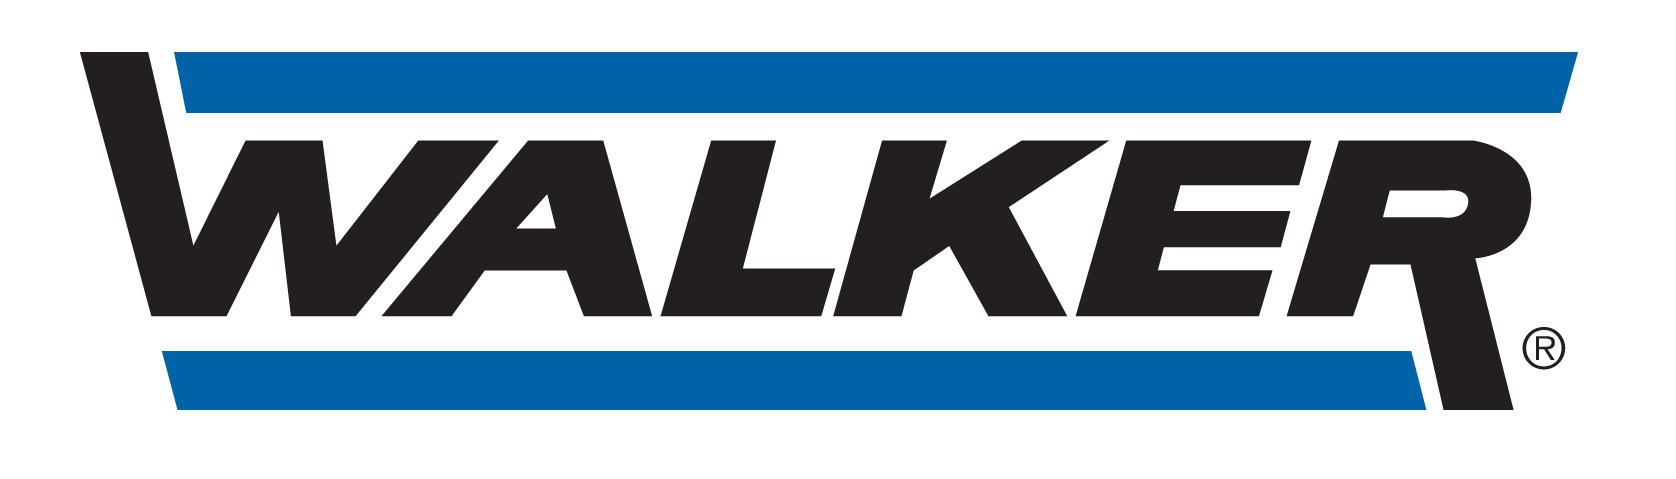 GARAGE GPM AUTOMOBILE - logo Walker